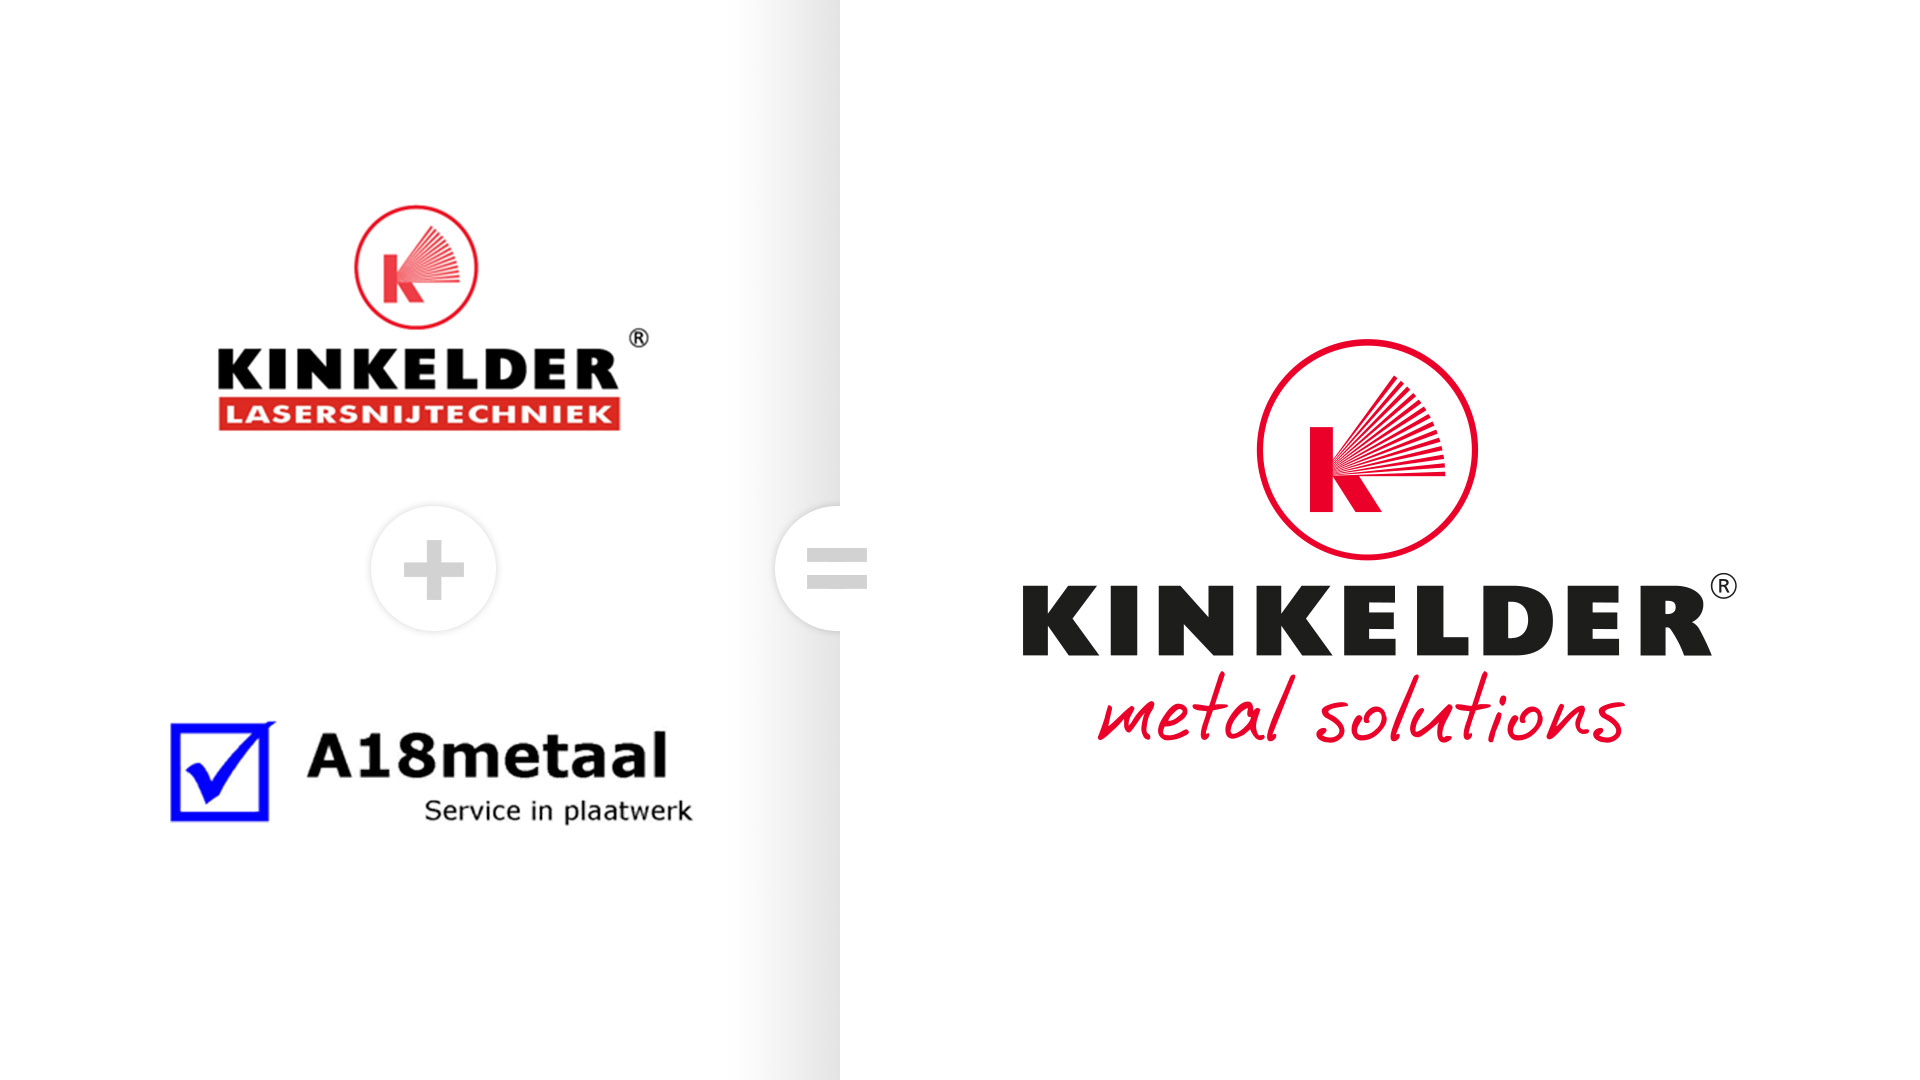 2016: Naamswijziging naar Kinkelder metal solutions